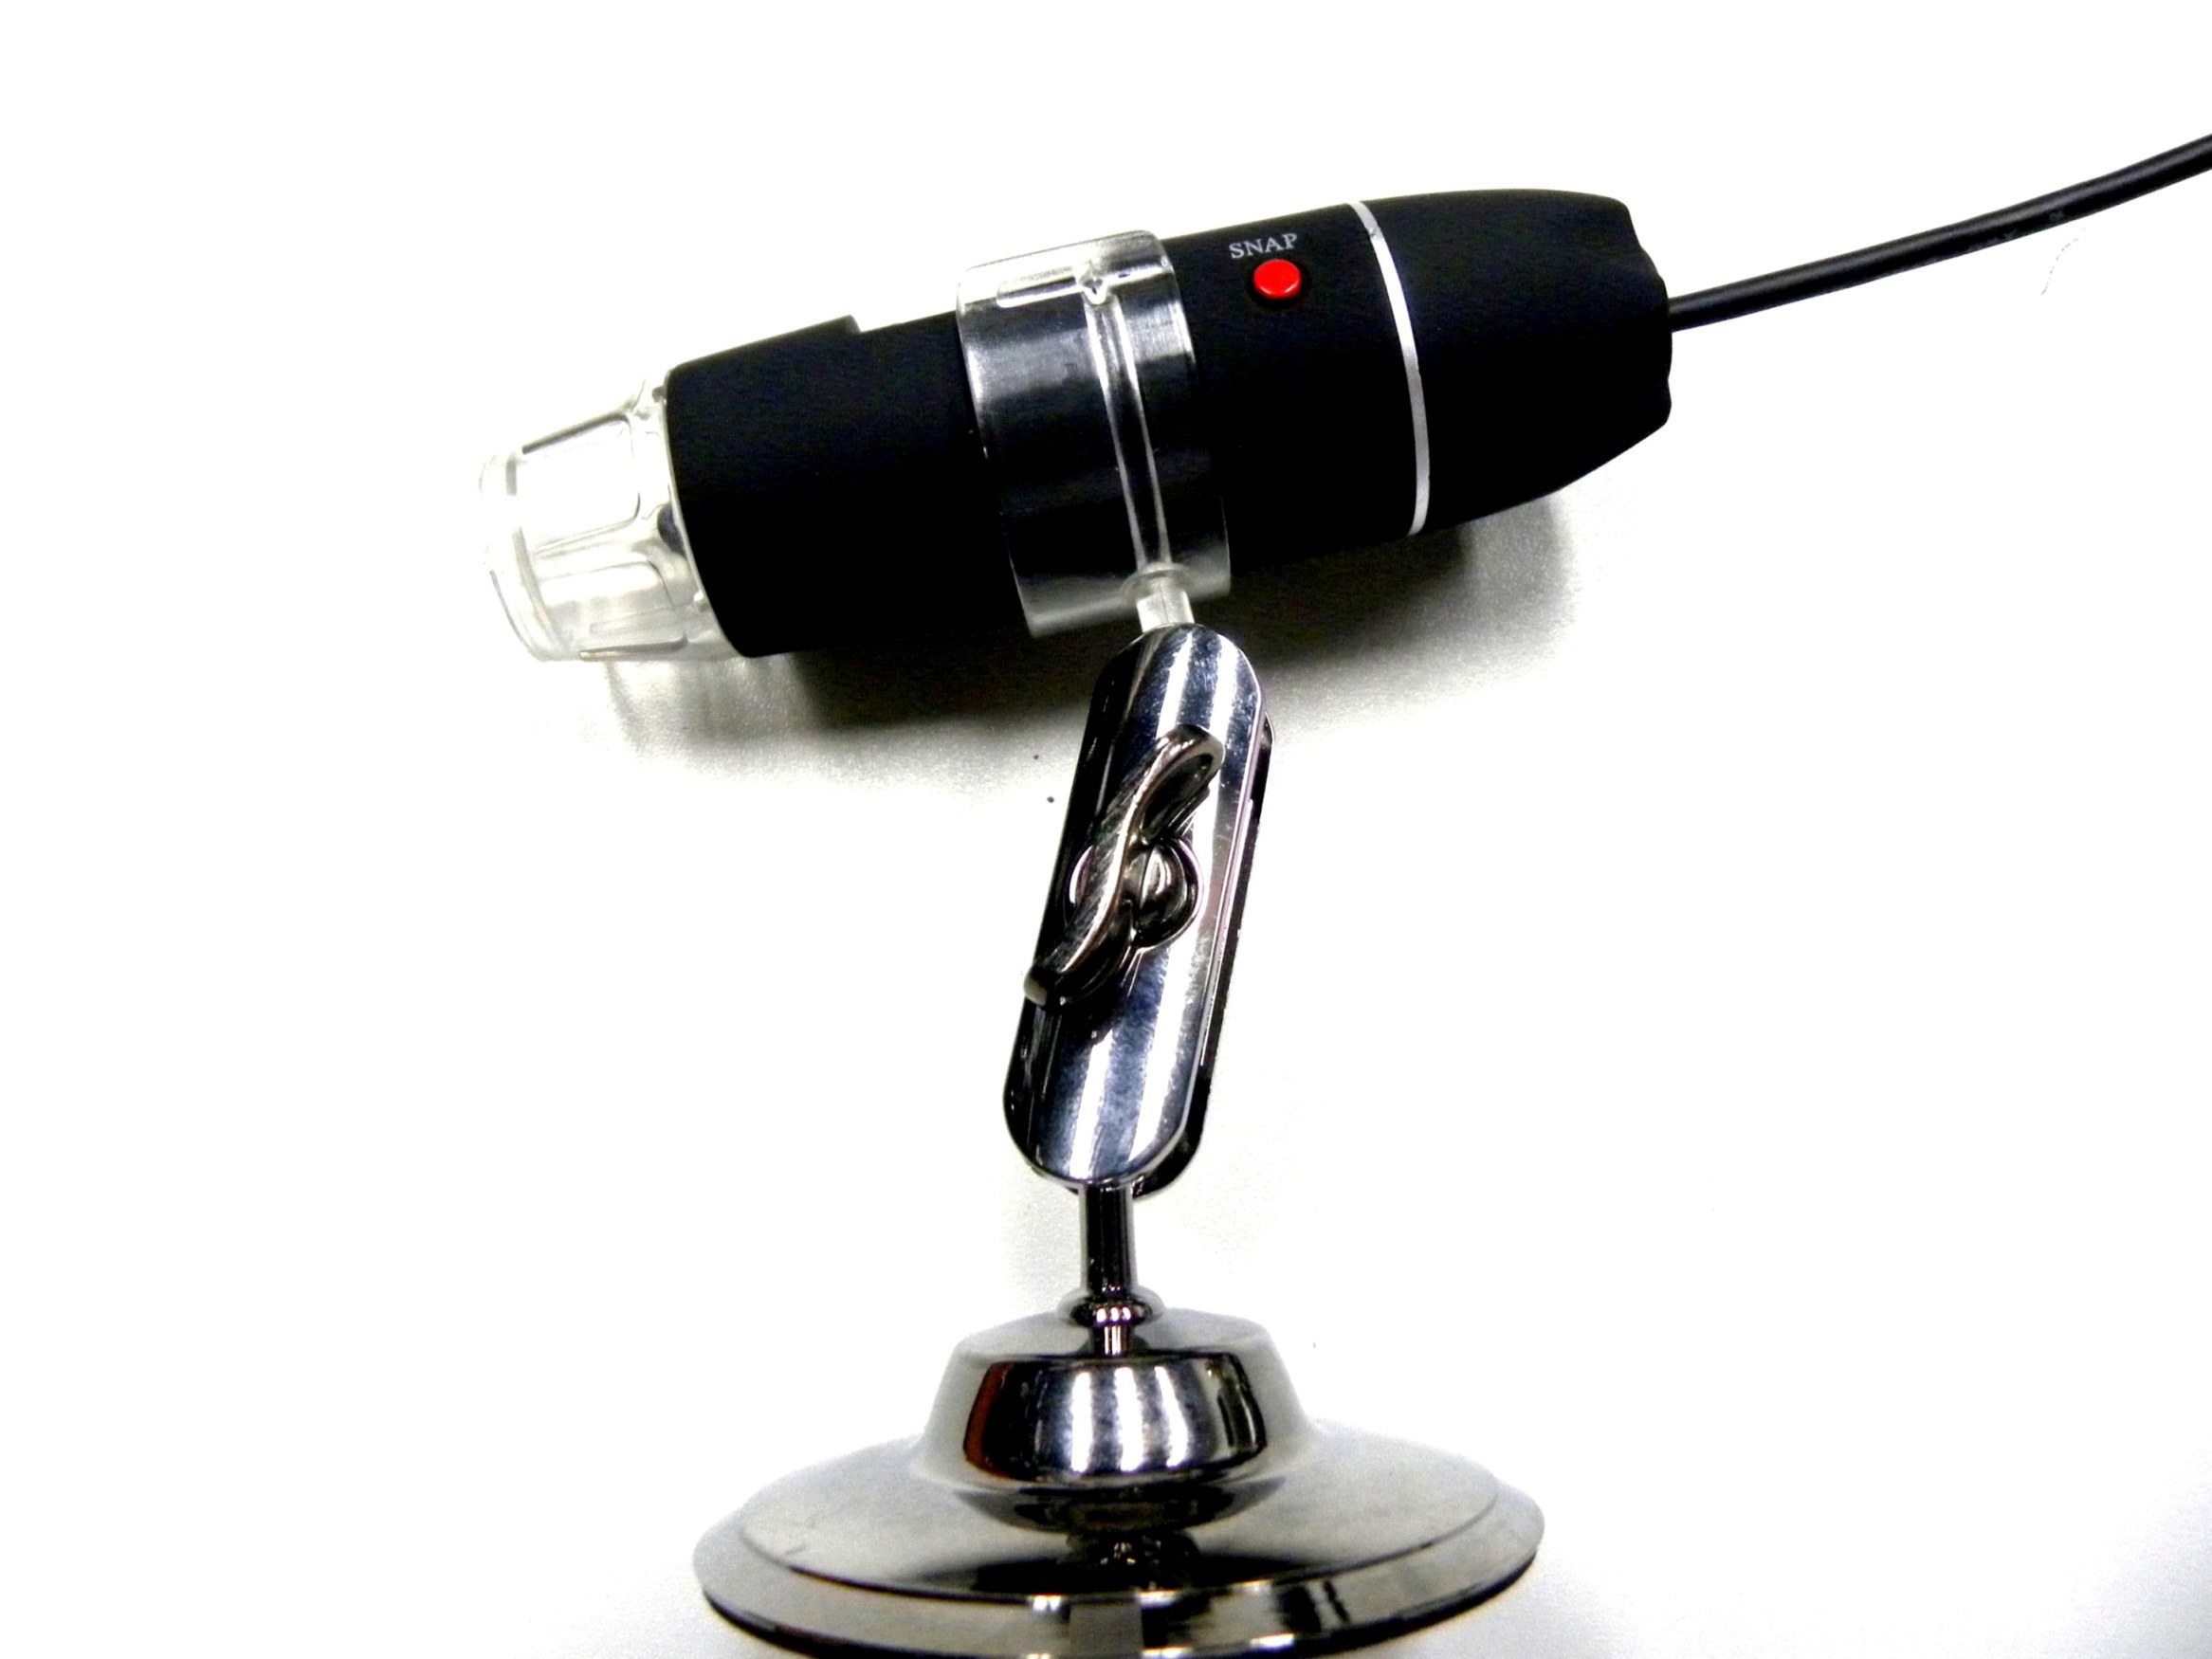 DMU-U400xデジタルUSB顕微鏡、顕微鏡カメラ